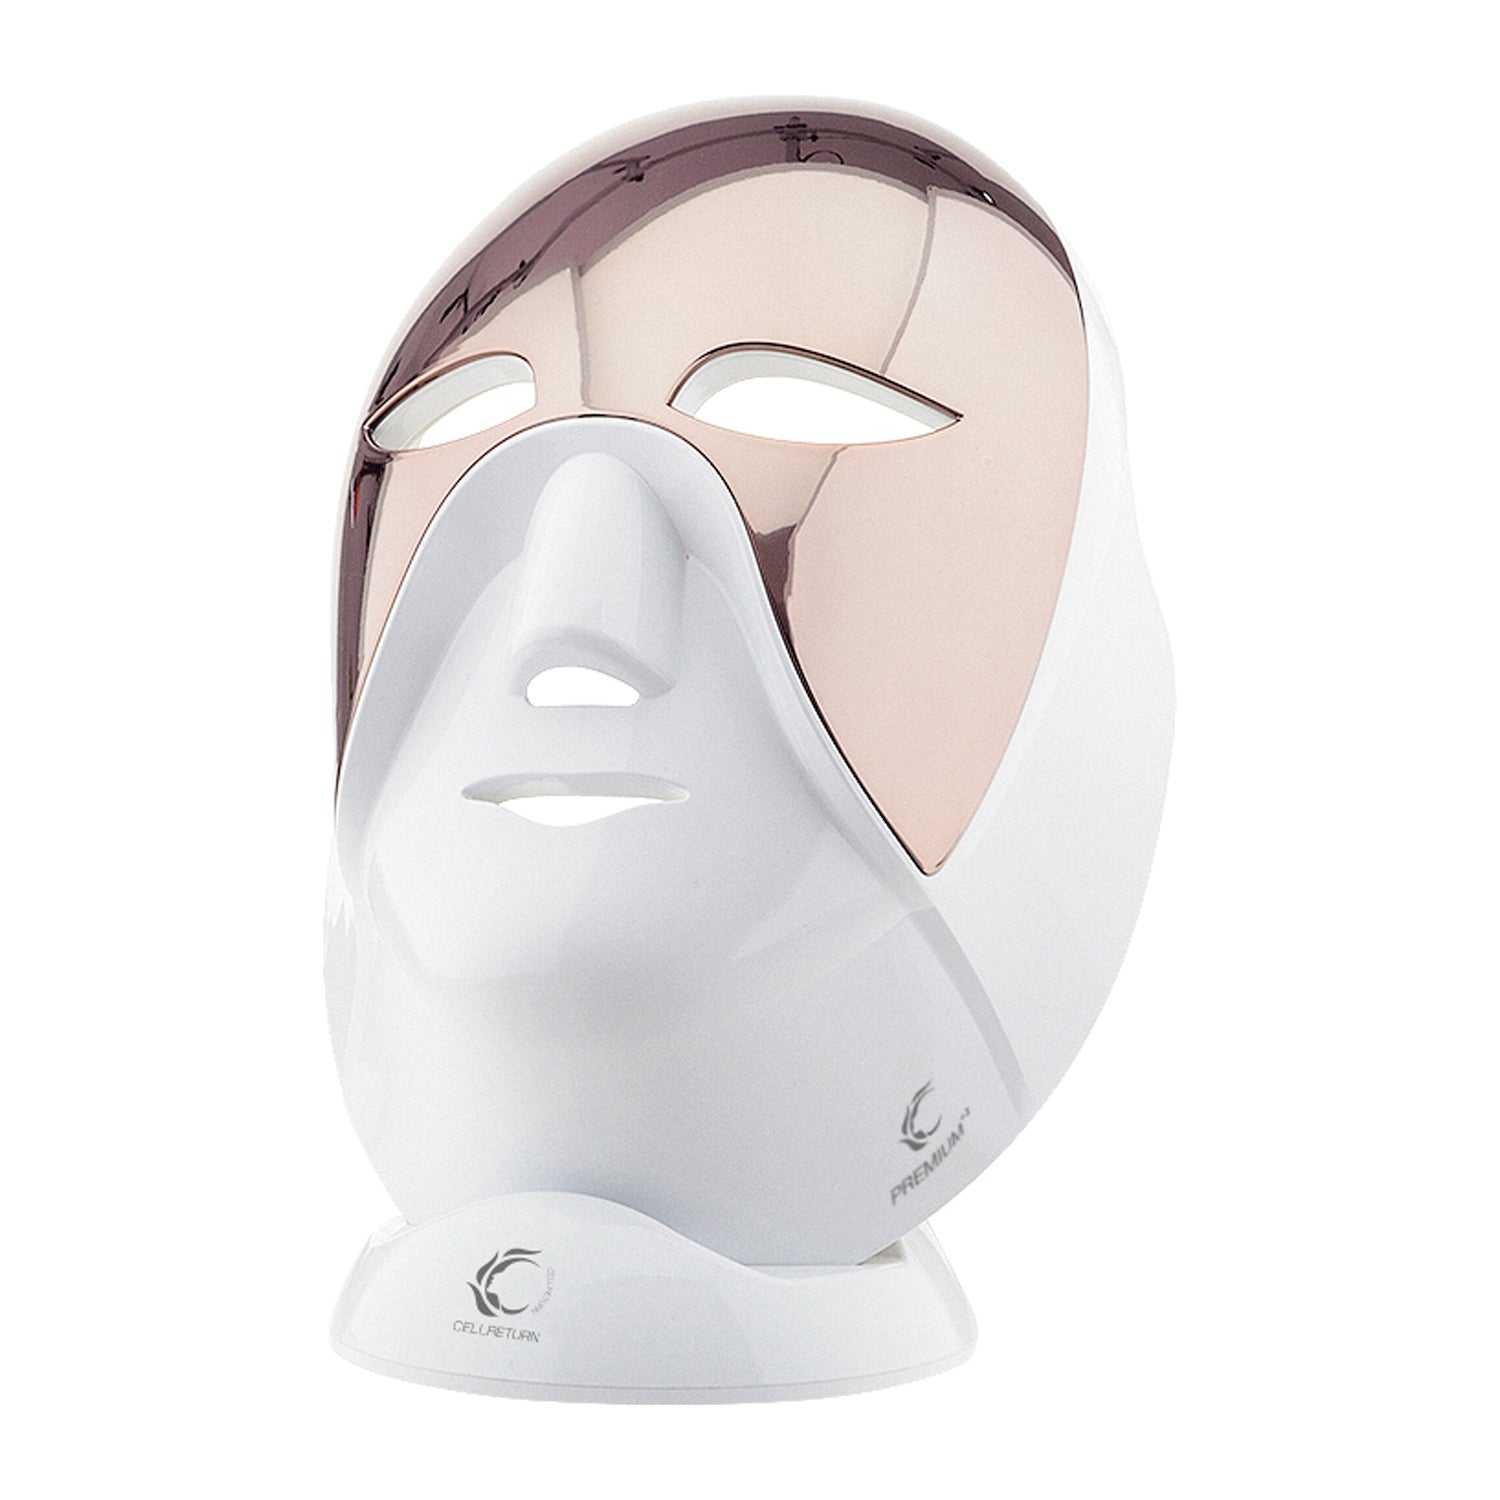 Cellreturn Premium LED Face Mask